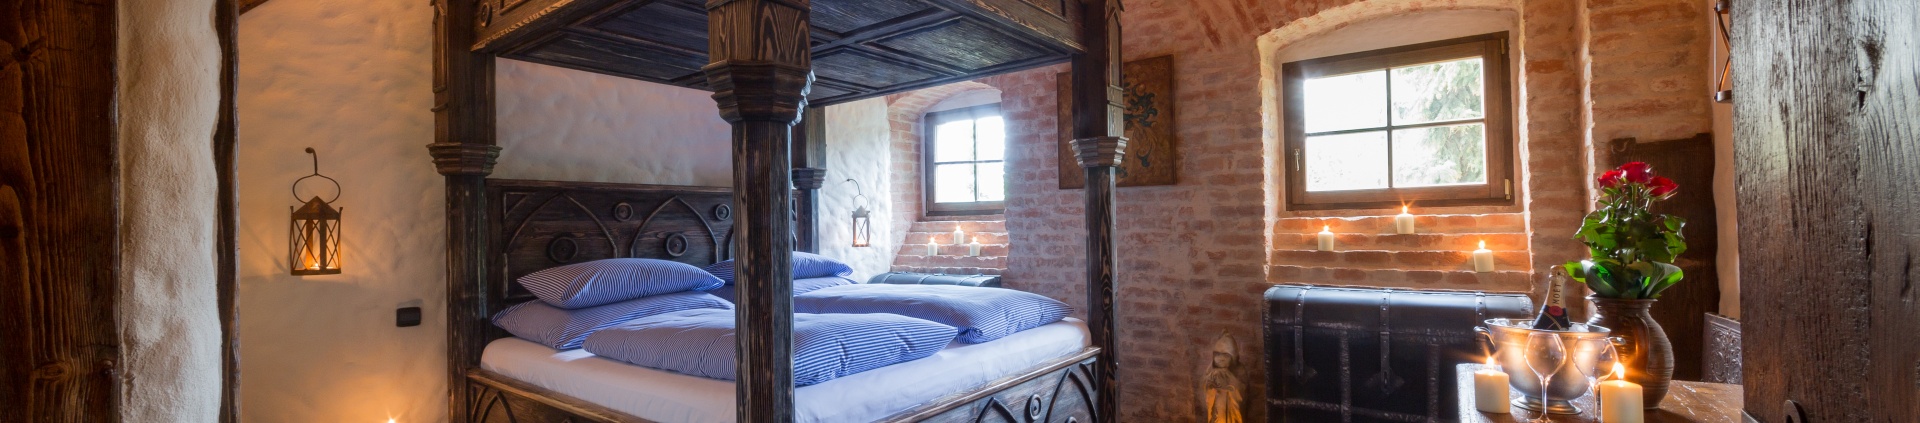 Středověký hotel - Měšťanský pobyt na 1 noc